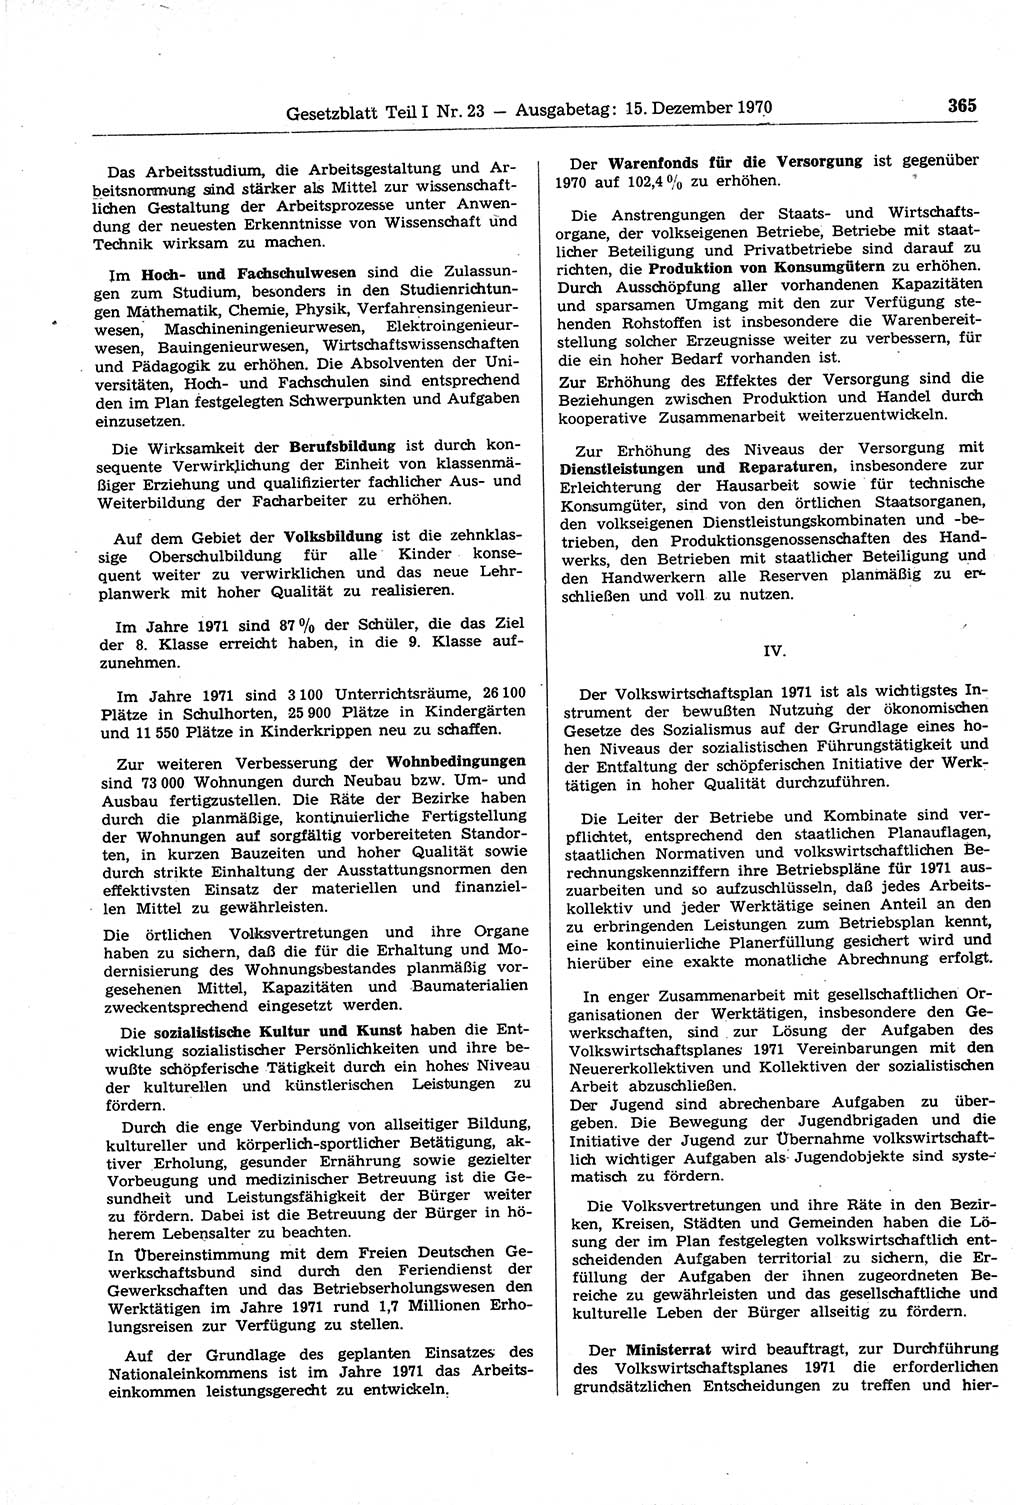 Gesetzblatt (GBl.) der Deutschen Demokratischen Republik (DDR) Teil Ⅰ 1970, Seite 365 (GBl. DDR Ⅰ 1970, S. 365)